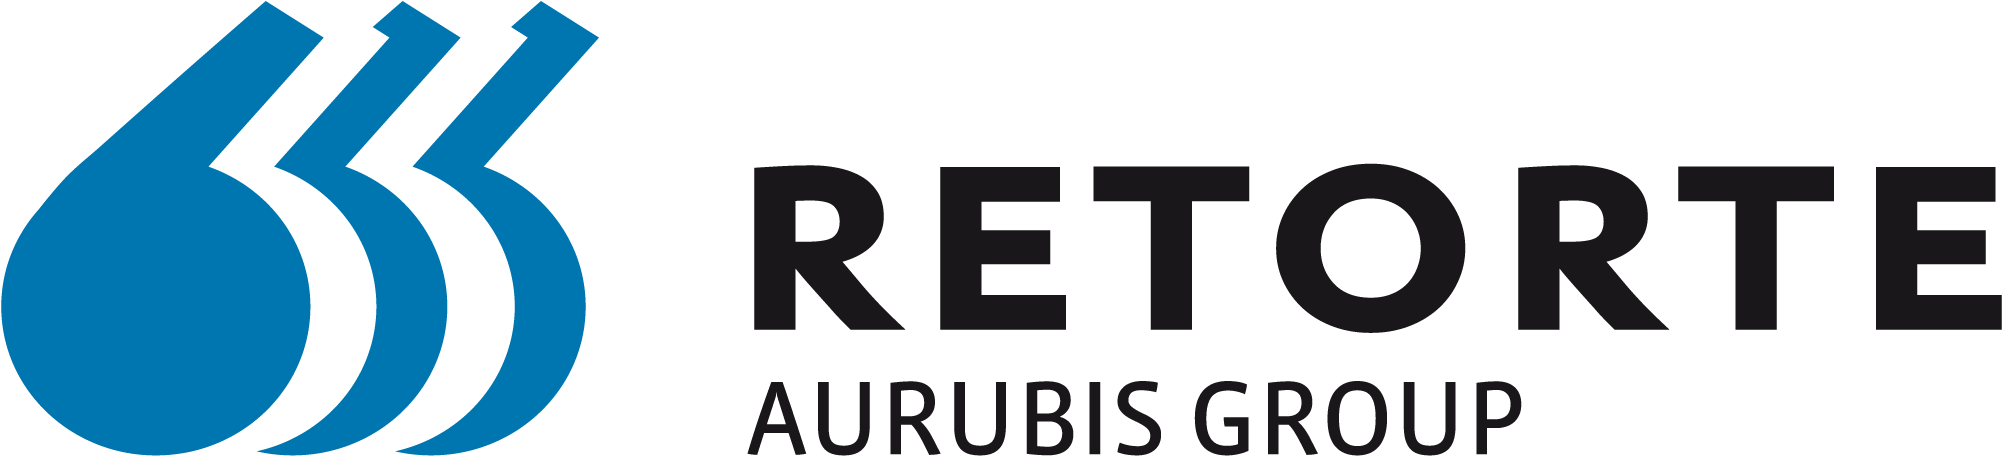 Retorte GmbH